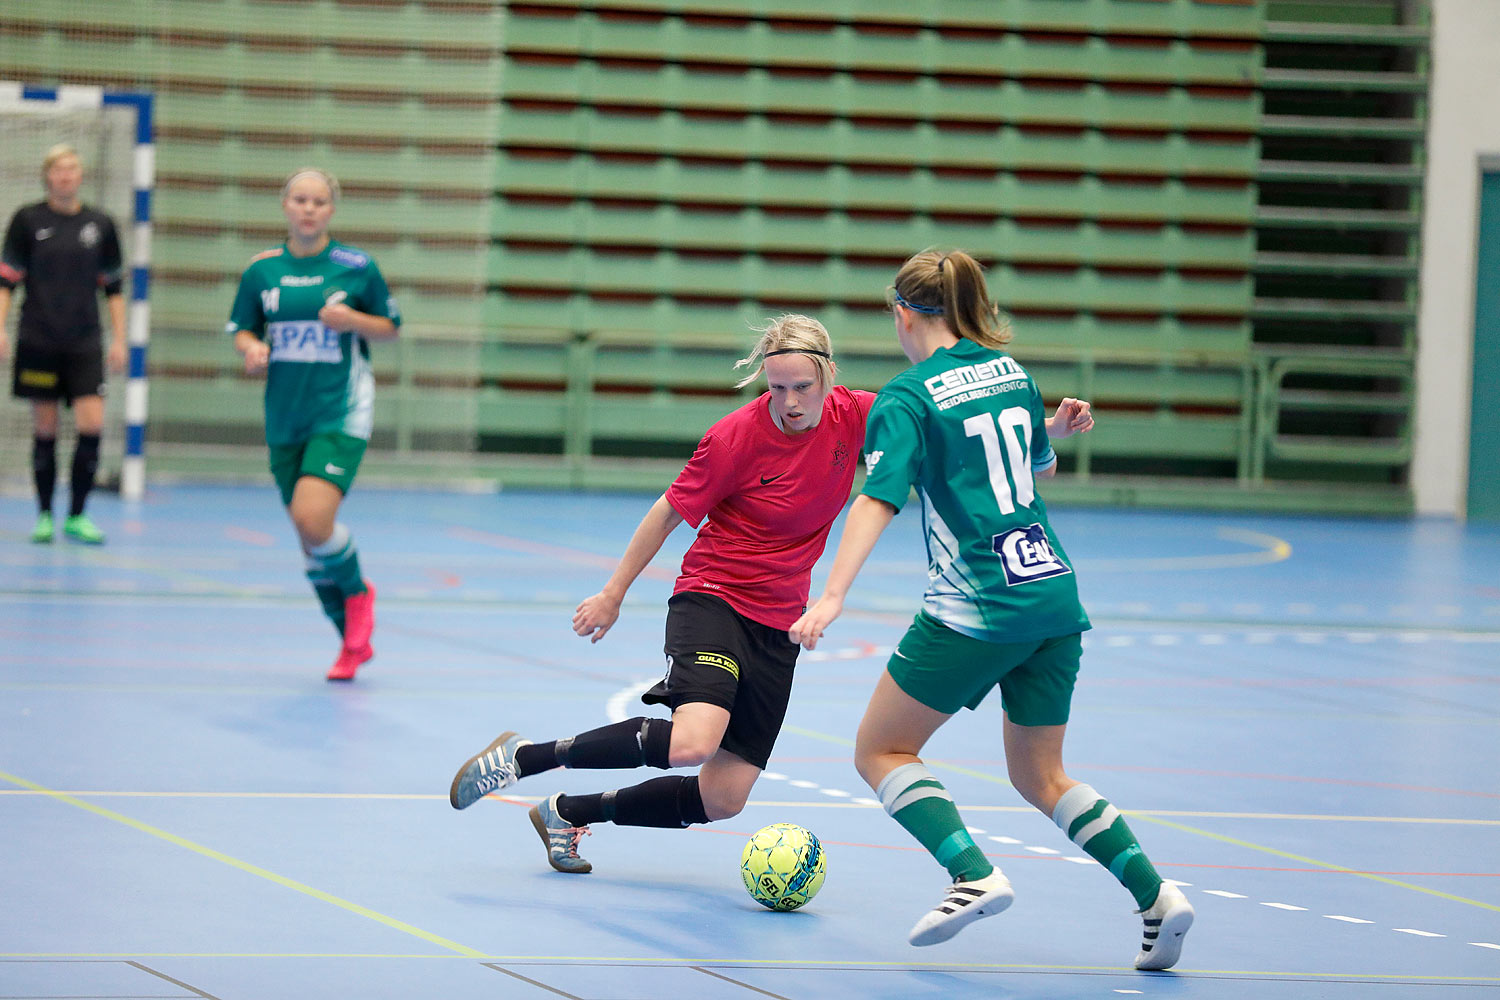 Skövde Futsalcup Damer Falköping Futsal Club-Våmbs IF,dam,Arena Skövde,Skövde,Sverige,Skövde Futsalcup 2016,Futsal,2016,141887